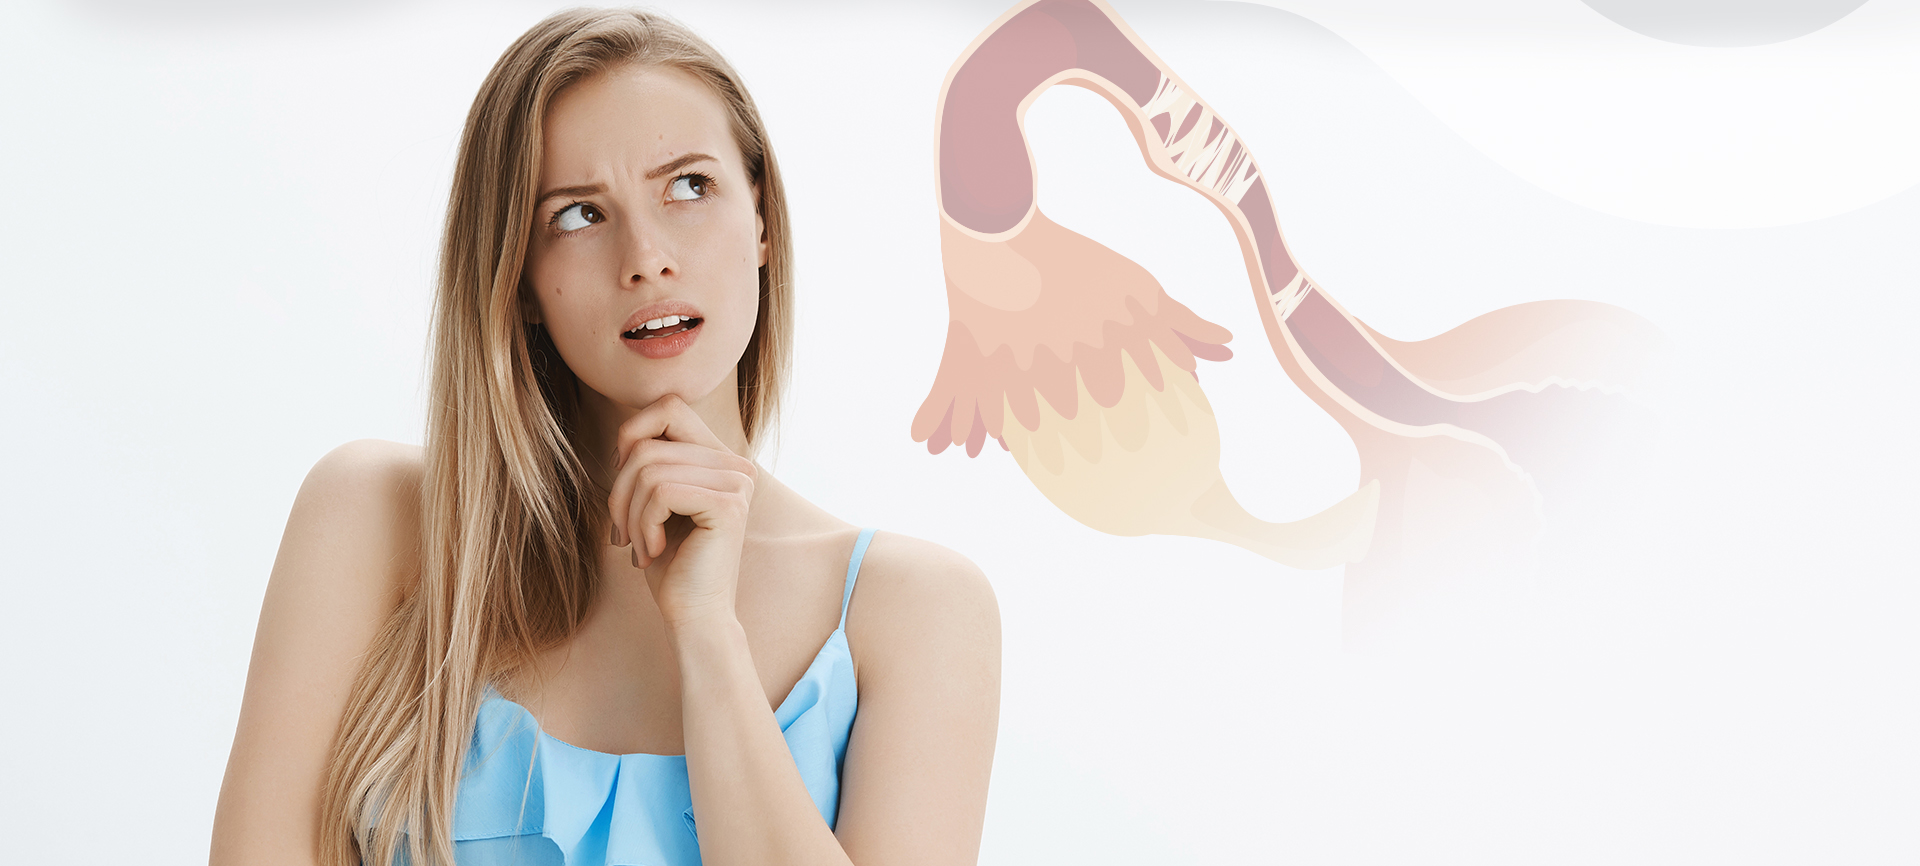 Obstrução das tubas uterinas: o que é?